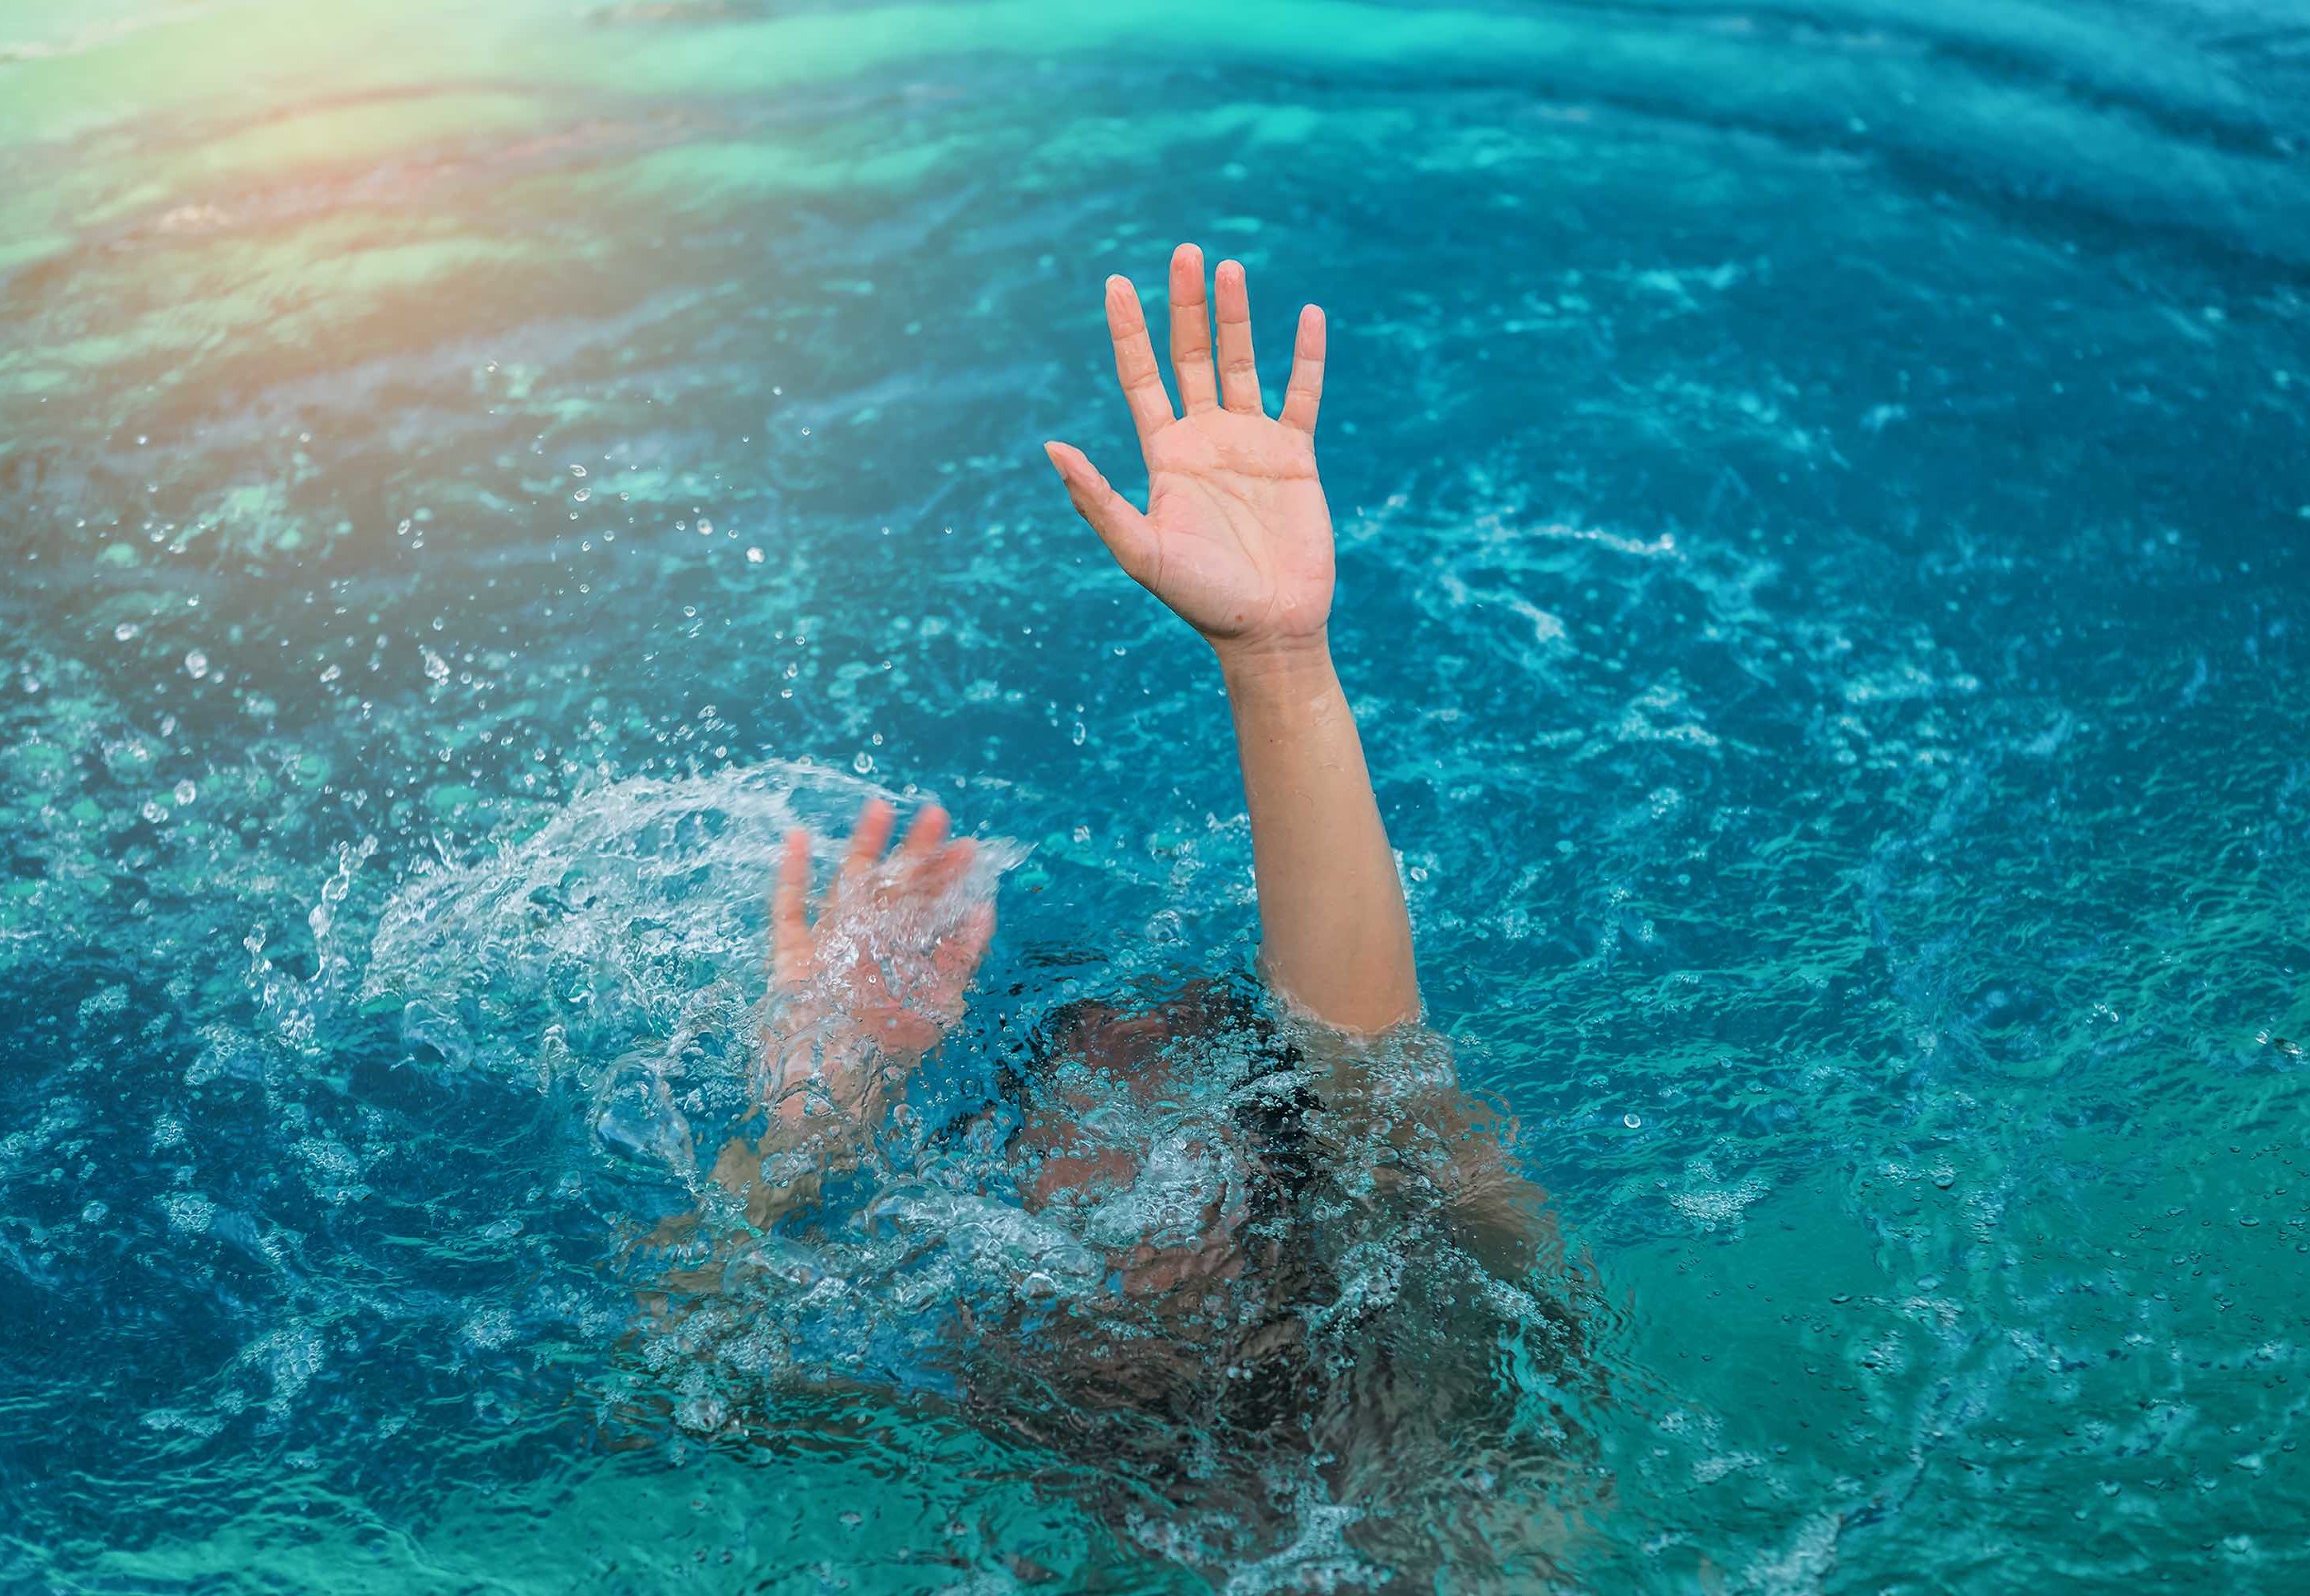 Страх утонуть. Тонущий человек. Человек тонет в воде. Девочка тонет в море. Человек тонет в бассейне.